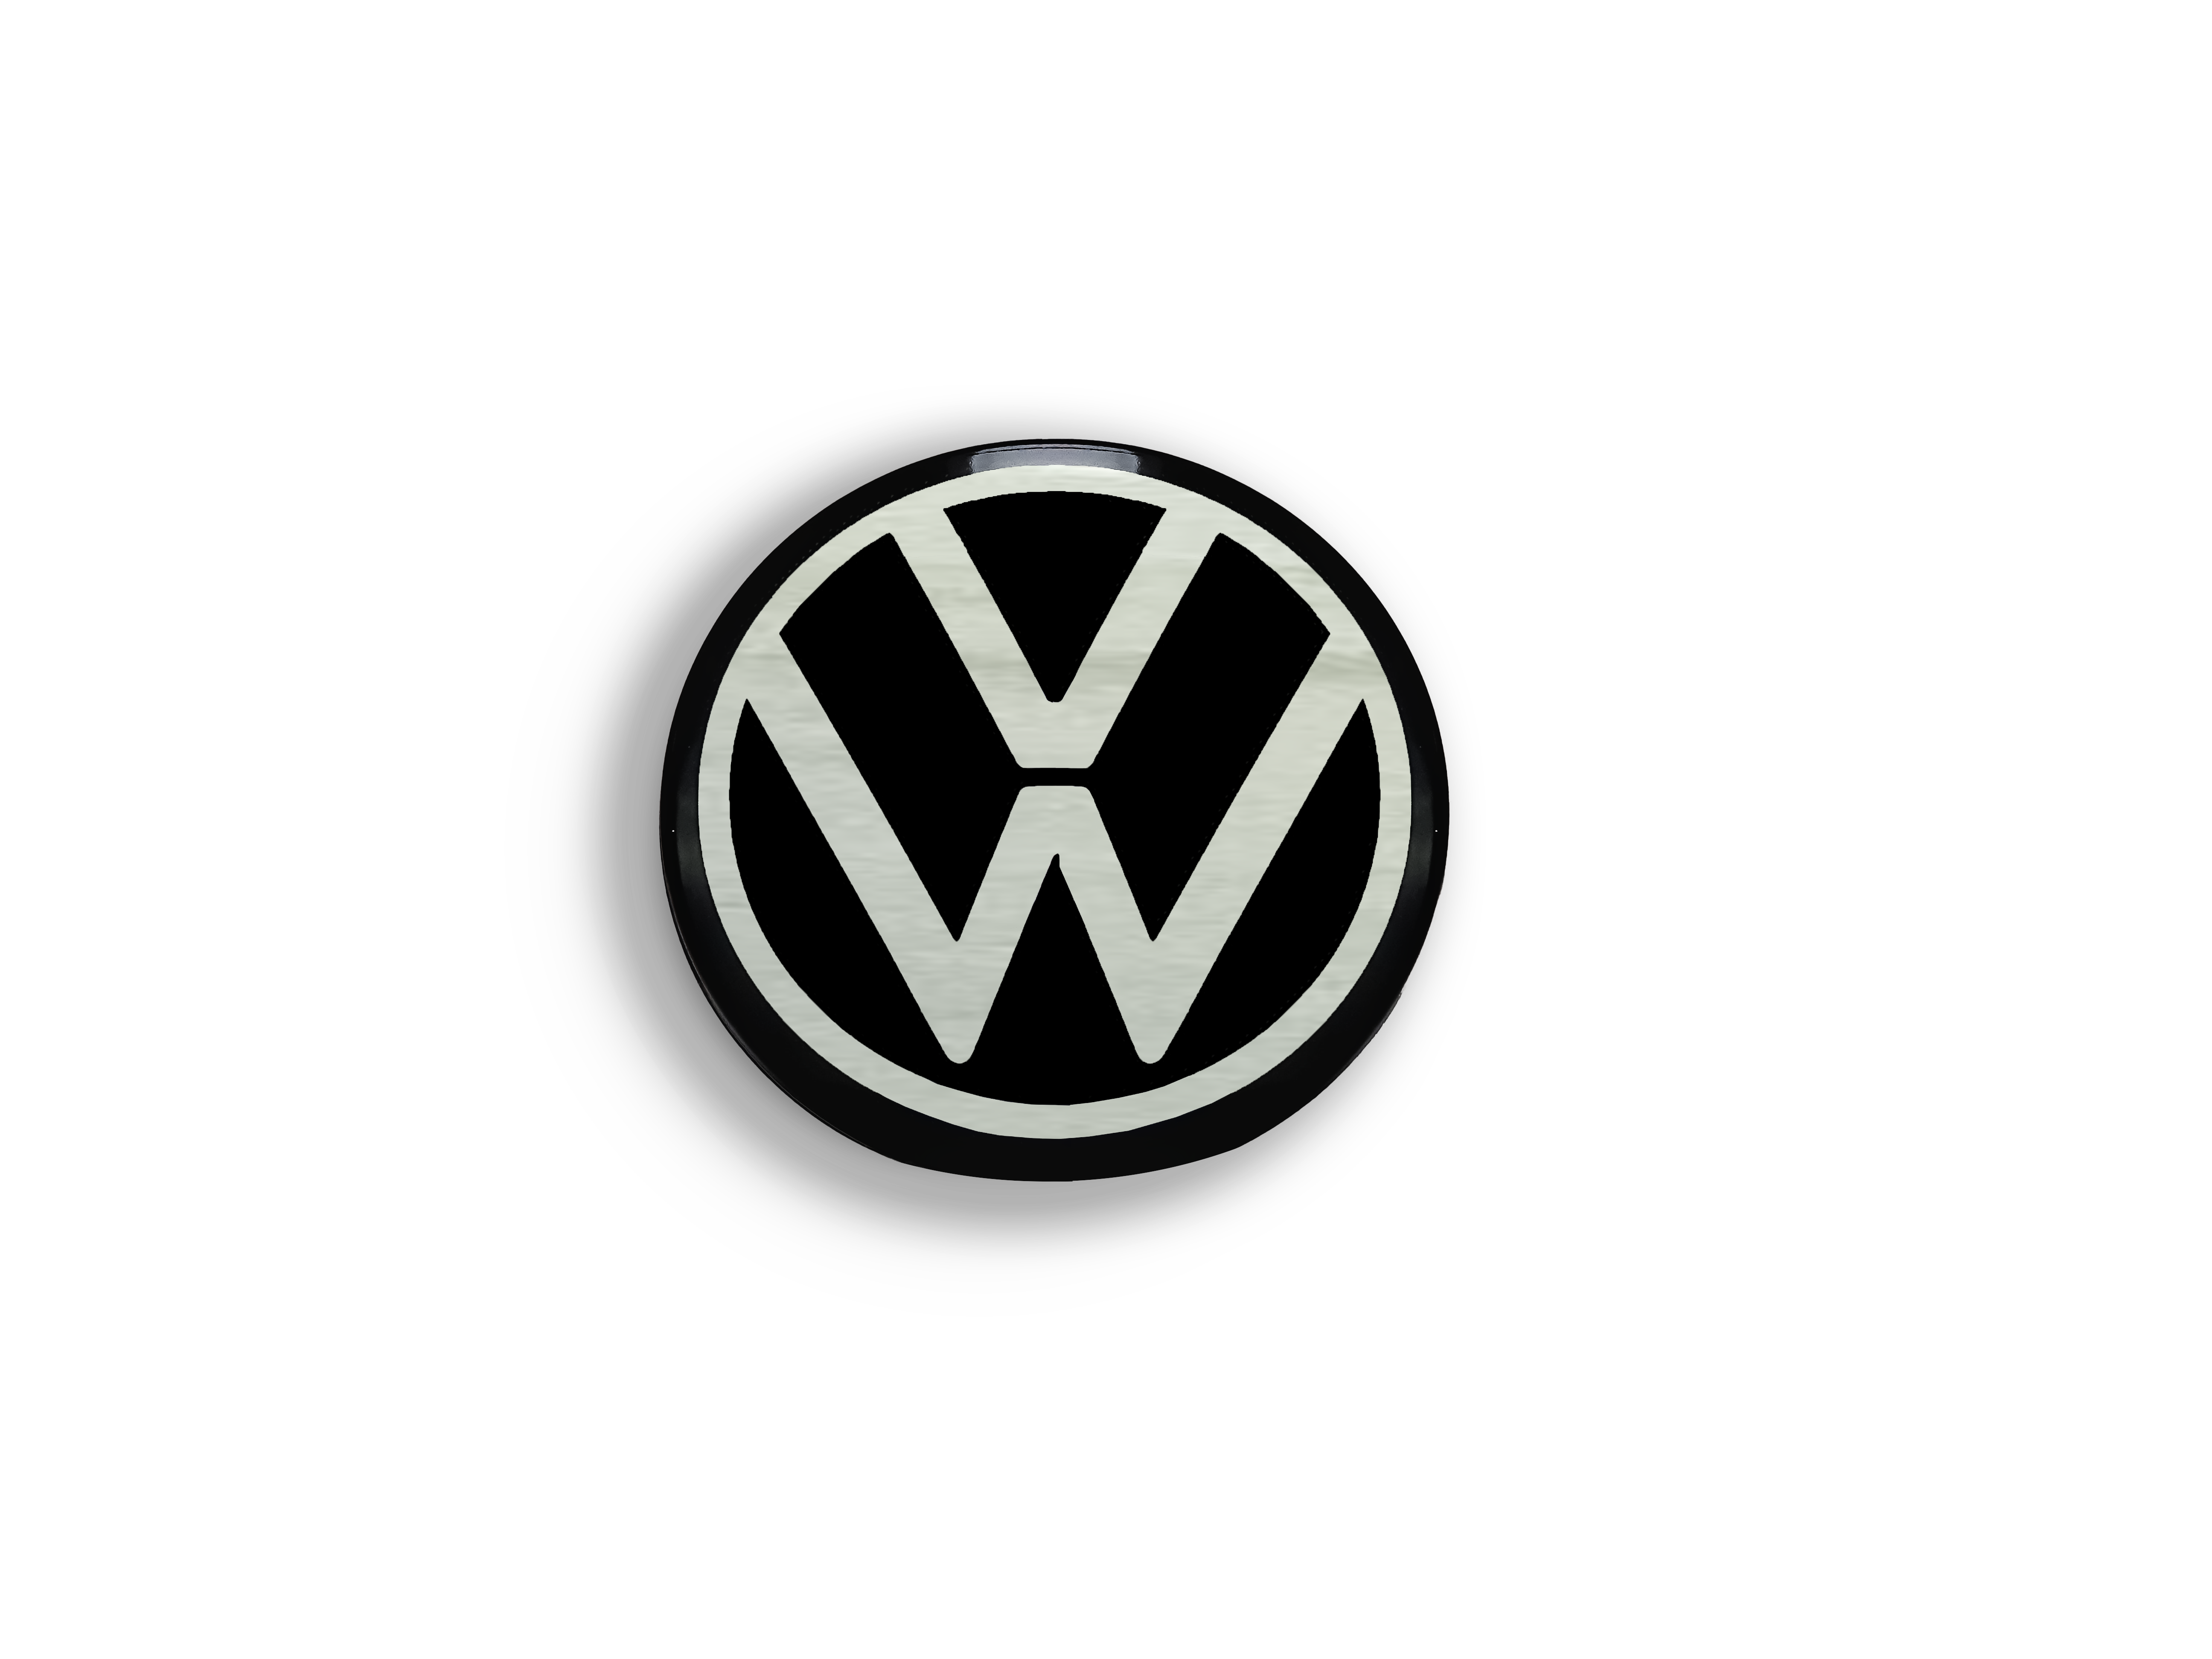 Original VW Dynamische Nabenkappen / Räder Zubehör / 000071213D